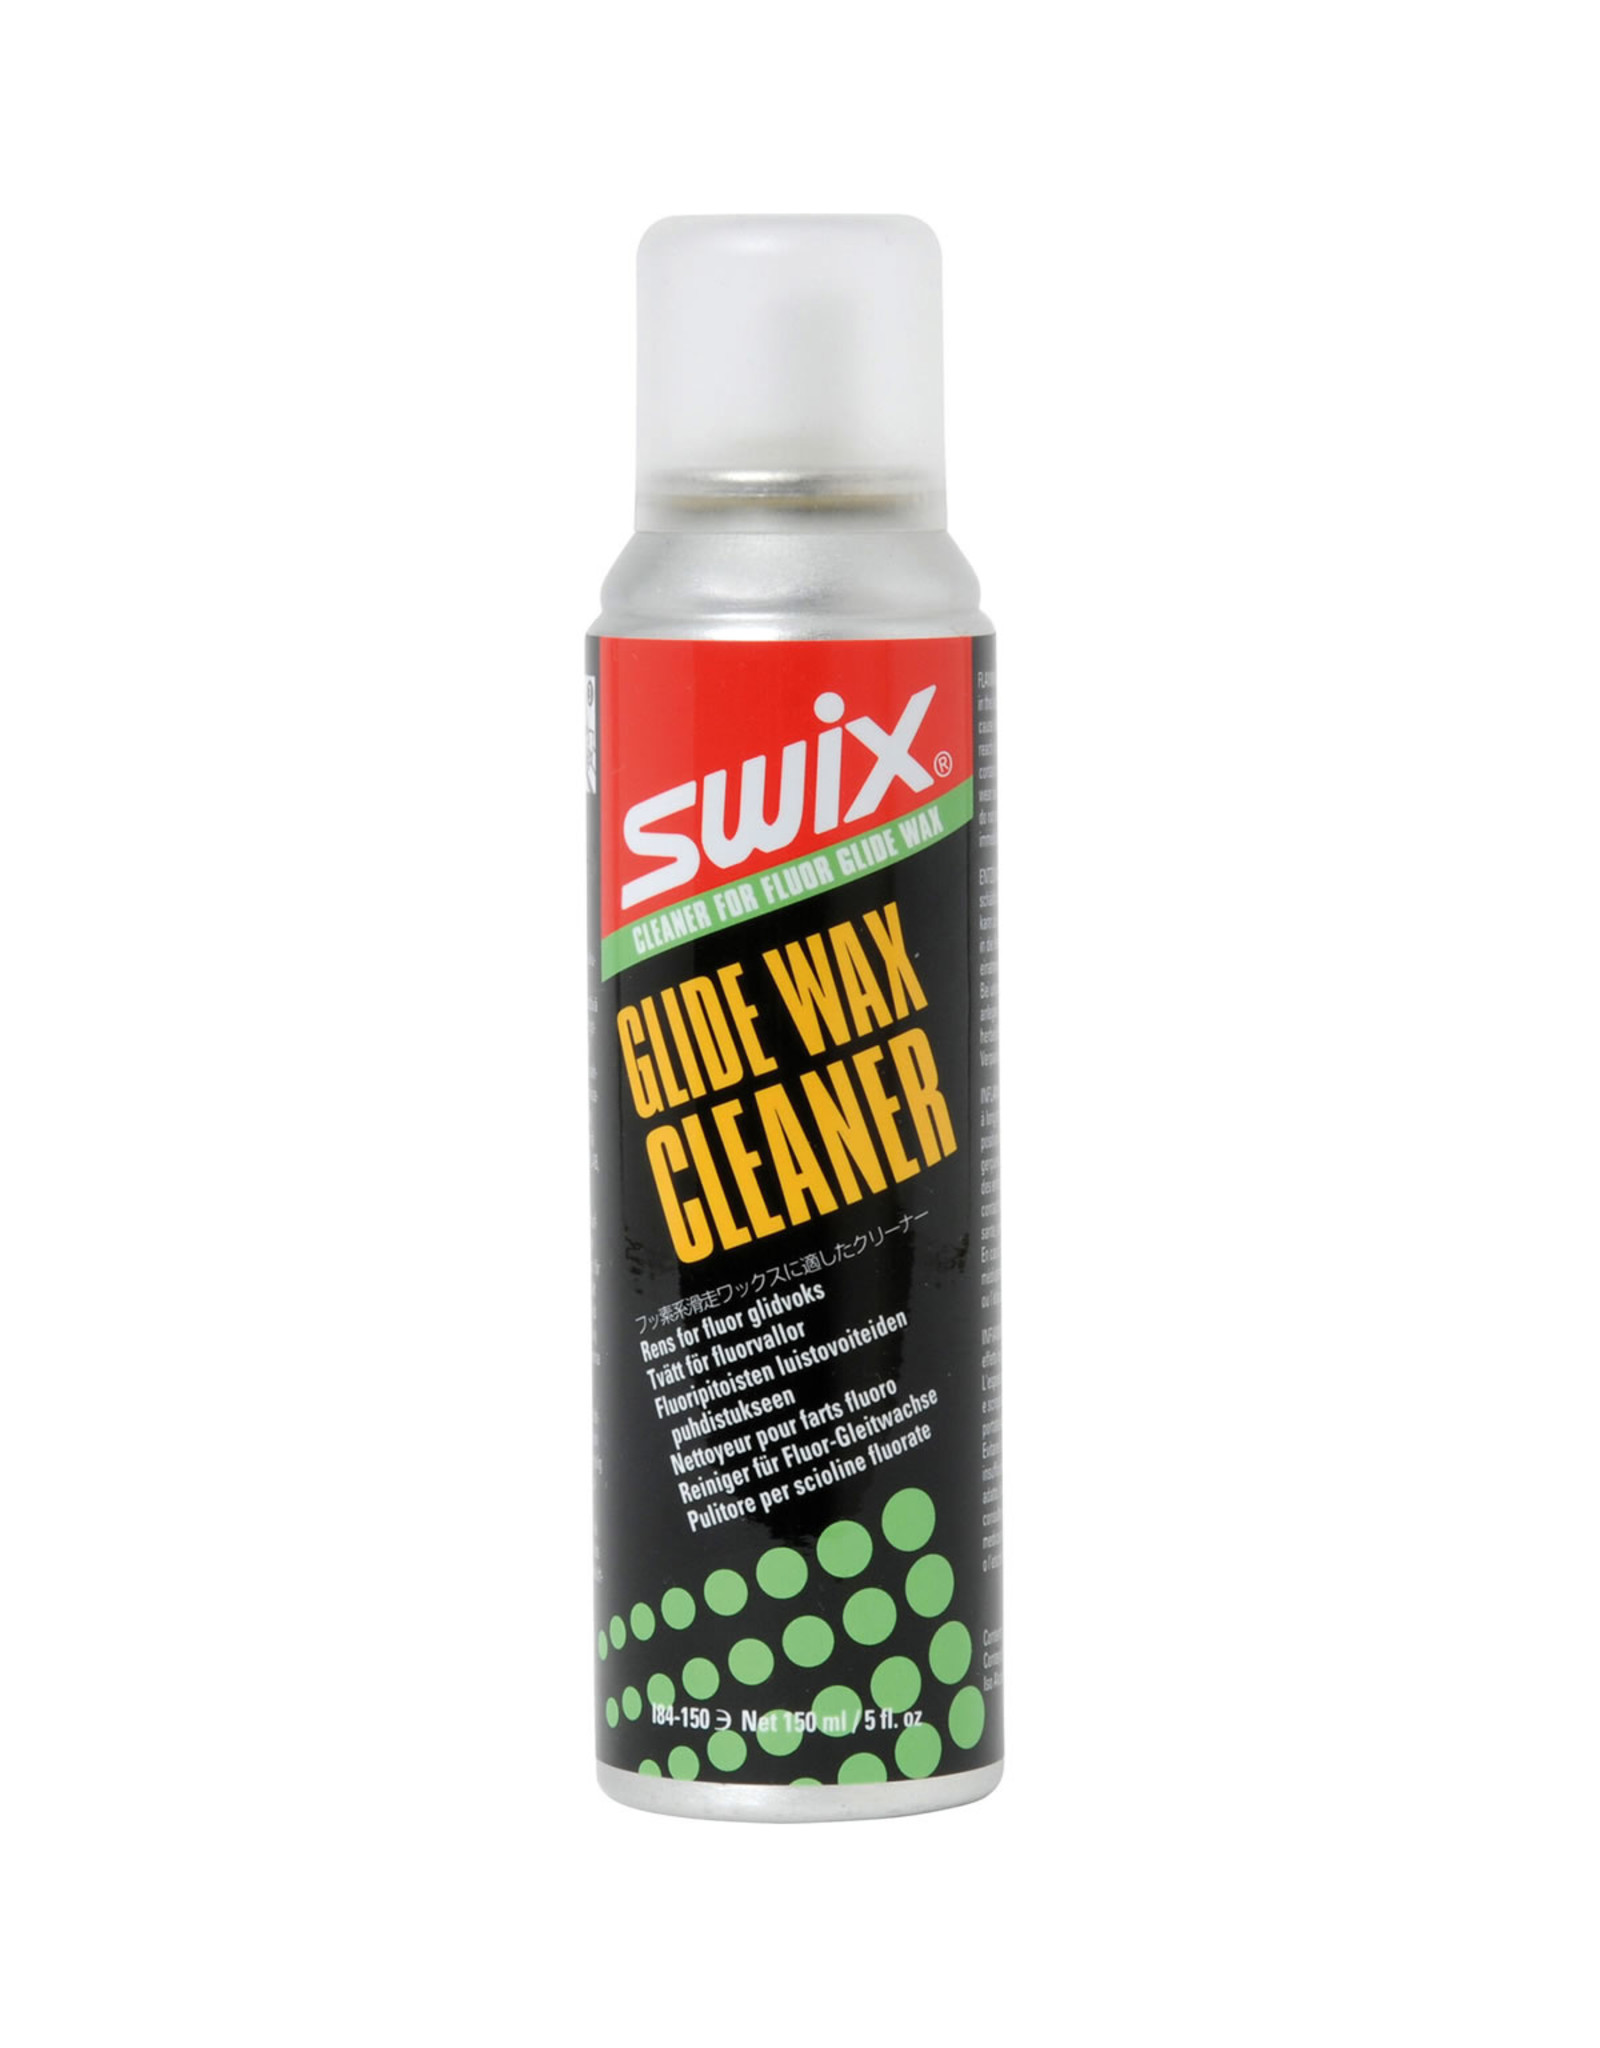 Swix Swix Fluor Glide Wax Cleaner - 150ml